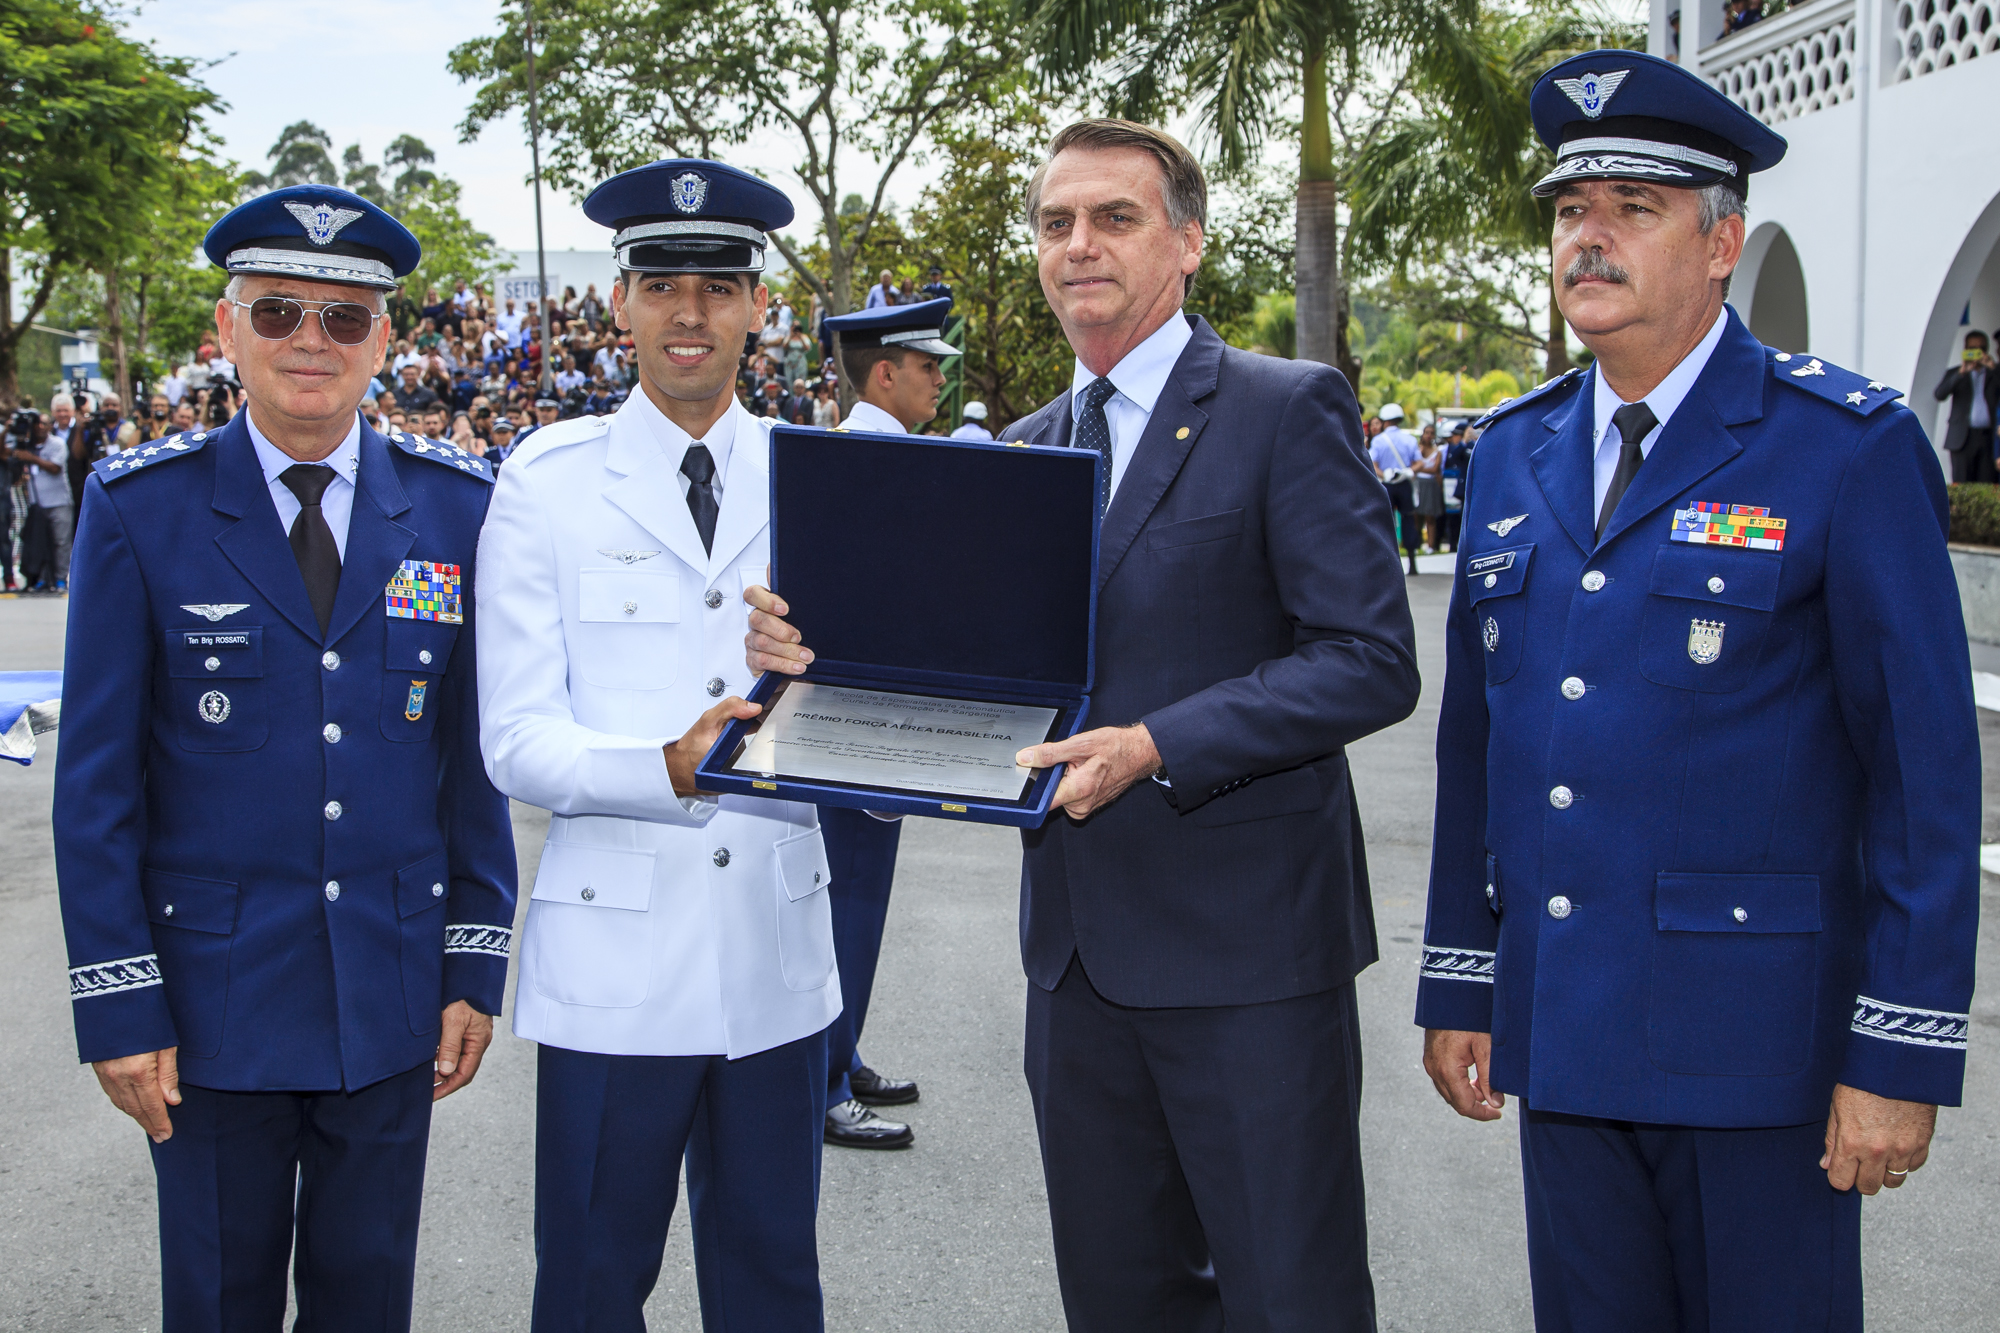 EEAR realiza formatura de 530 novos sargentos da FAB - Força Aérea  Brasileira